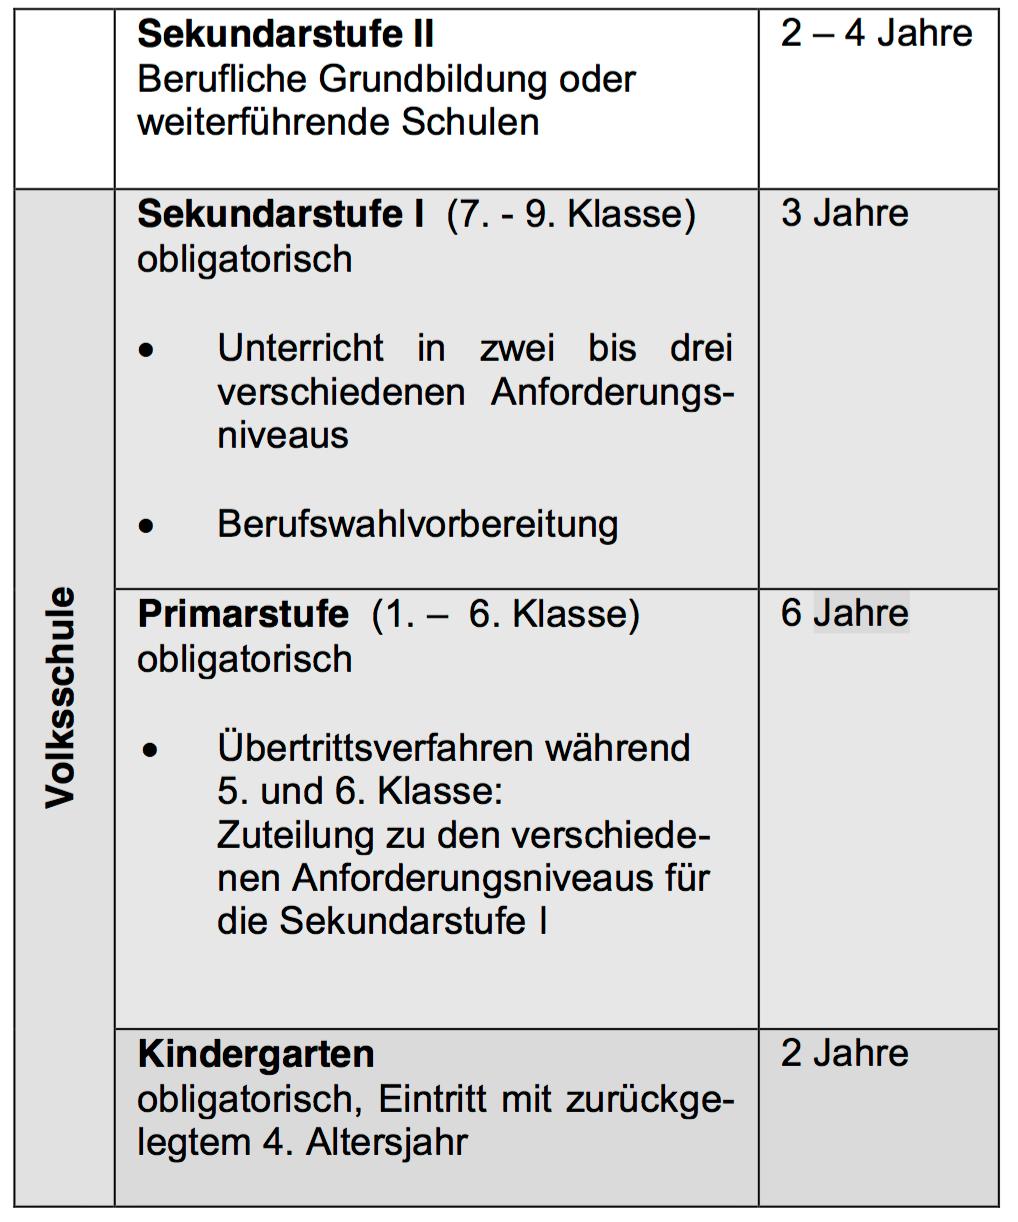 Bildungswesen im Kanton Bern Die Volksschule dauert in der Regel elf Jahre. Der Eintritt in den Kindergarten erfolgt nach dem zuru ckgelegten vierten Altersjahr.